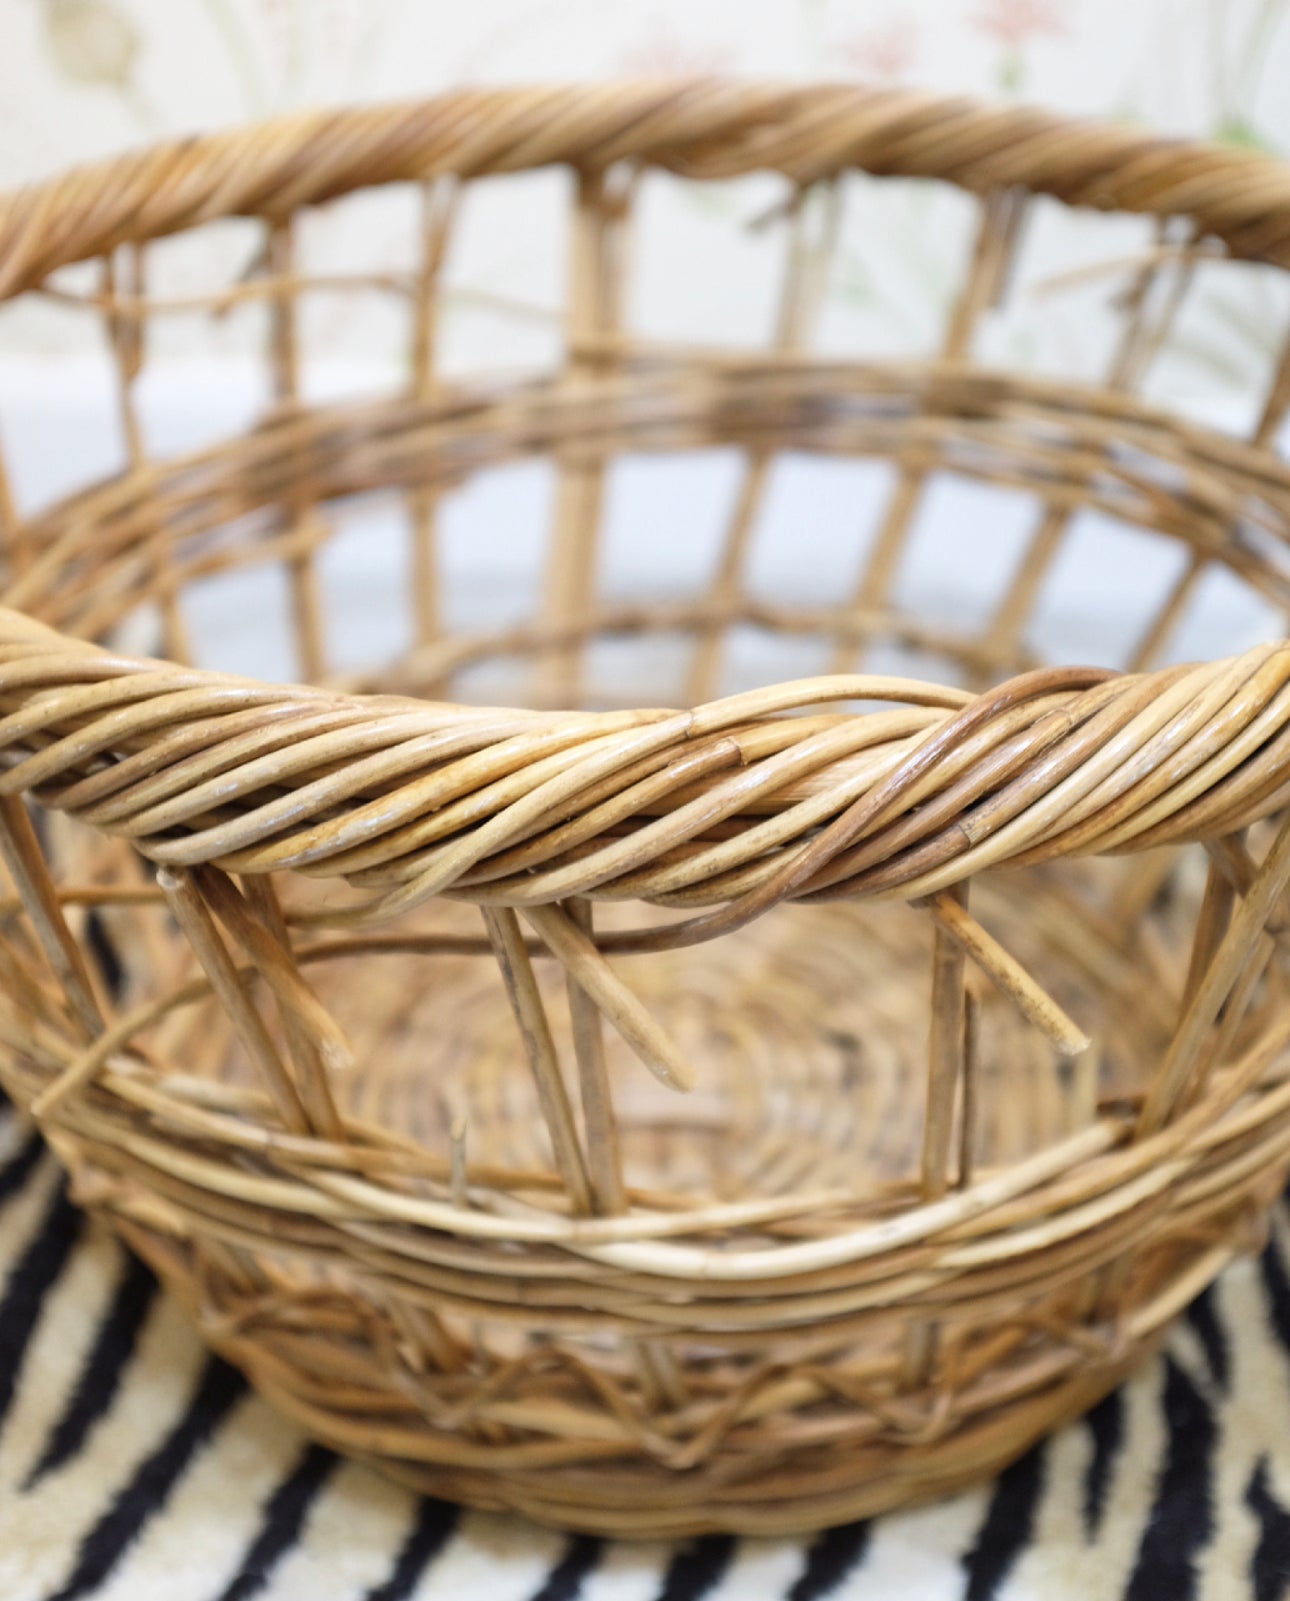 Large French Open Weave Wicker Basket